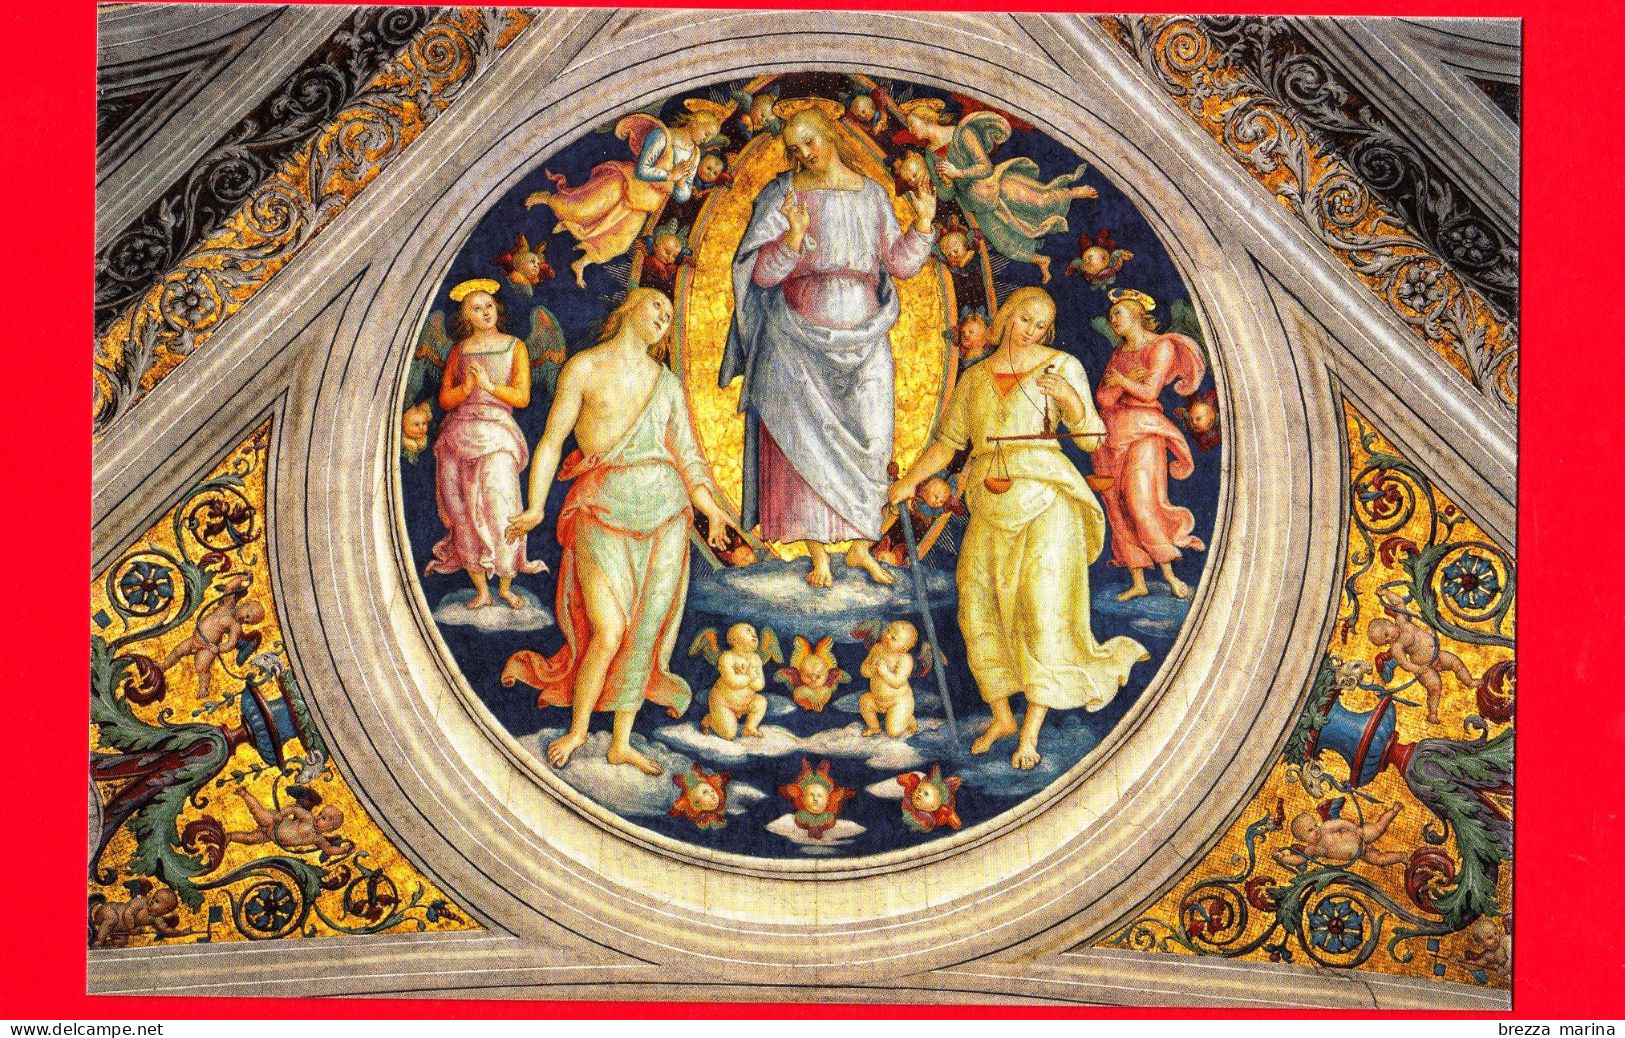 Nuovo - MNH - VATICANO - 2023 - Cartolina postale – 500 anni della morte di Pietro Vannucci, in arte Perugino – 8.20